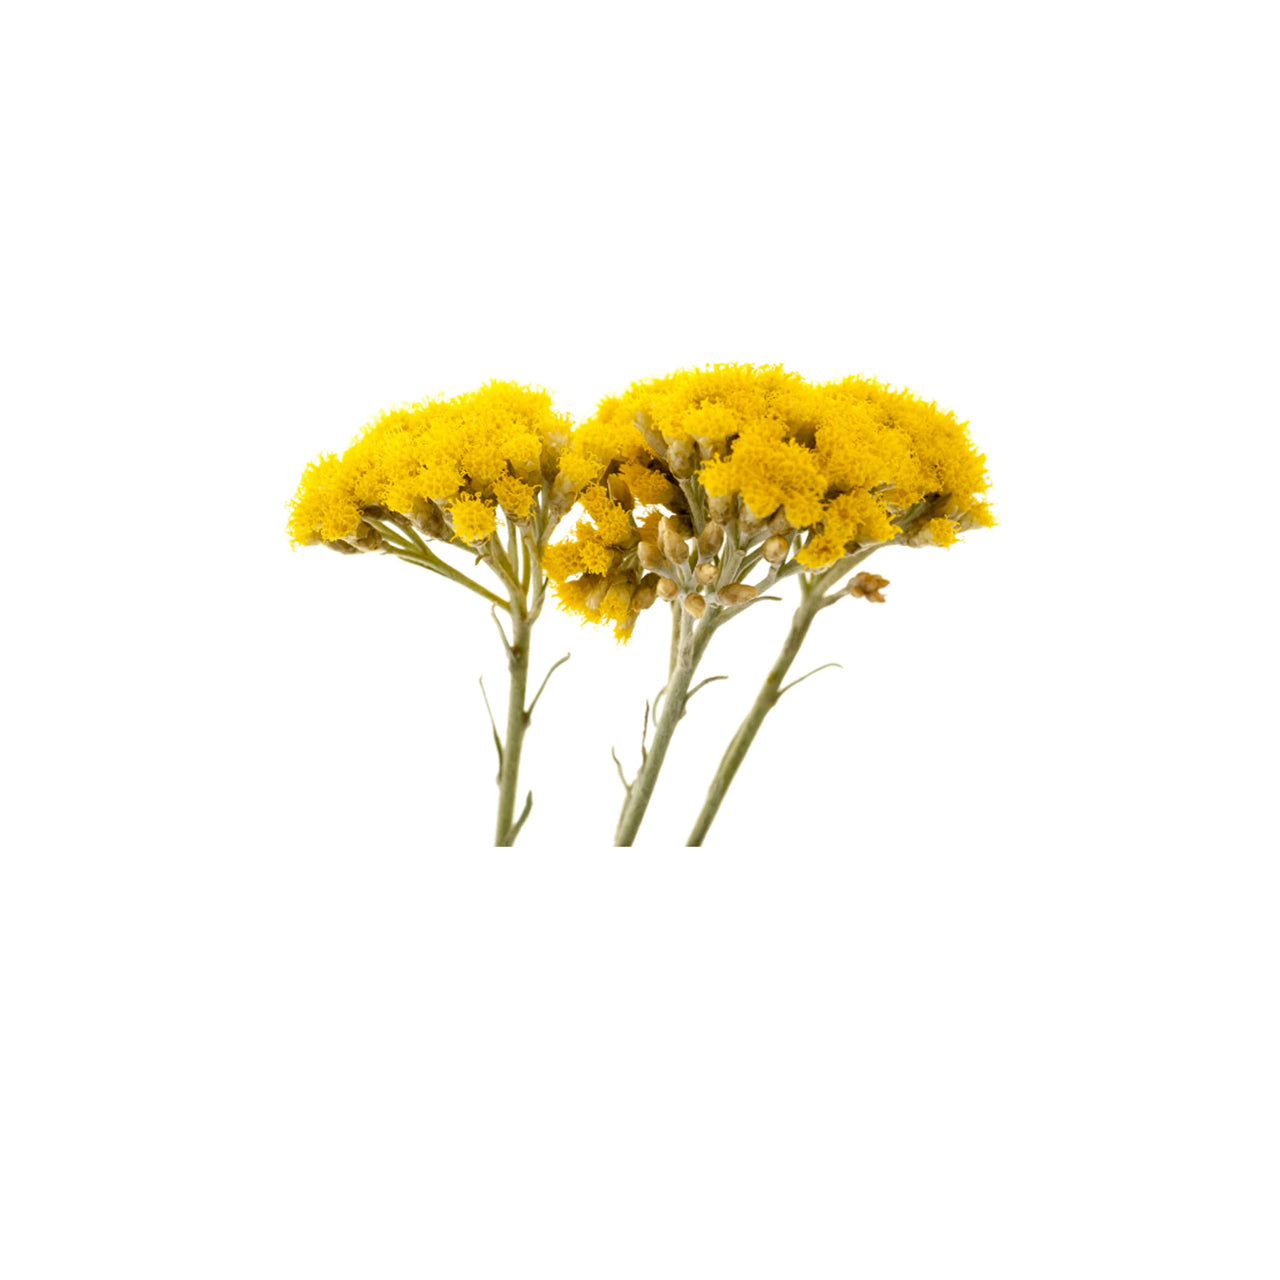 Helichrysum Gymocephalum Essential Oil